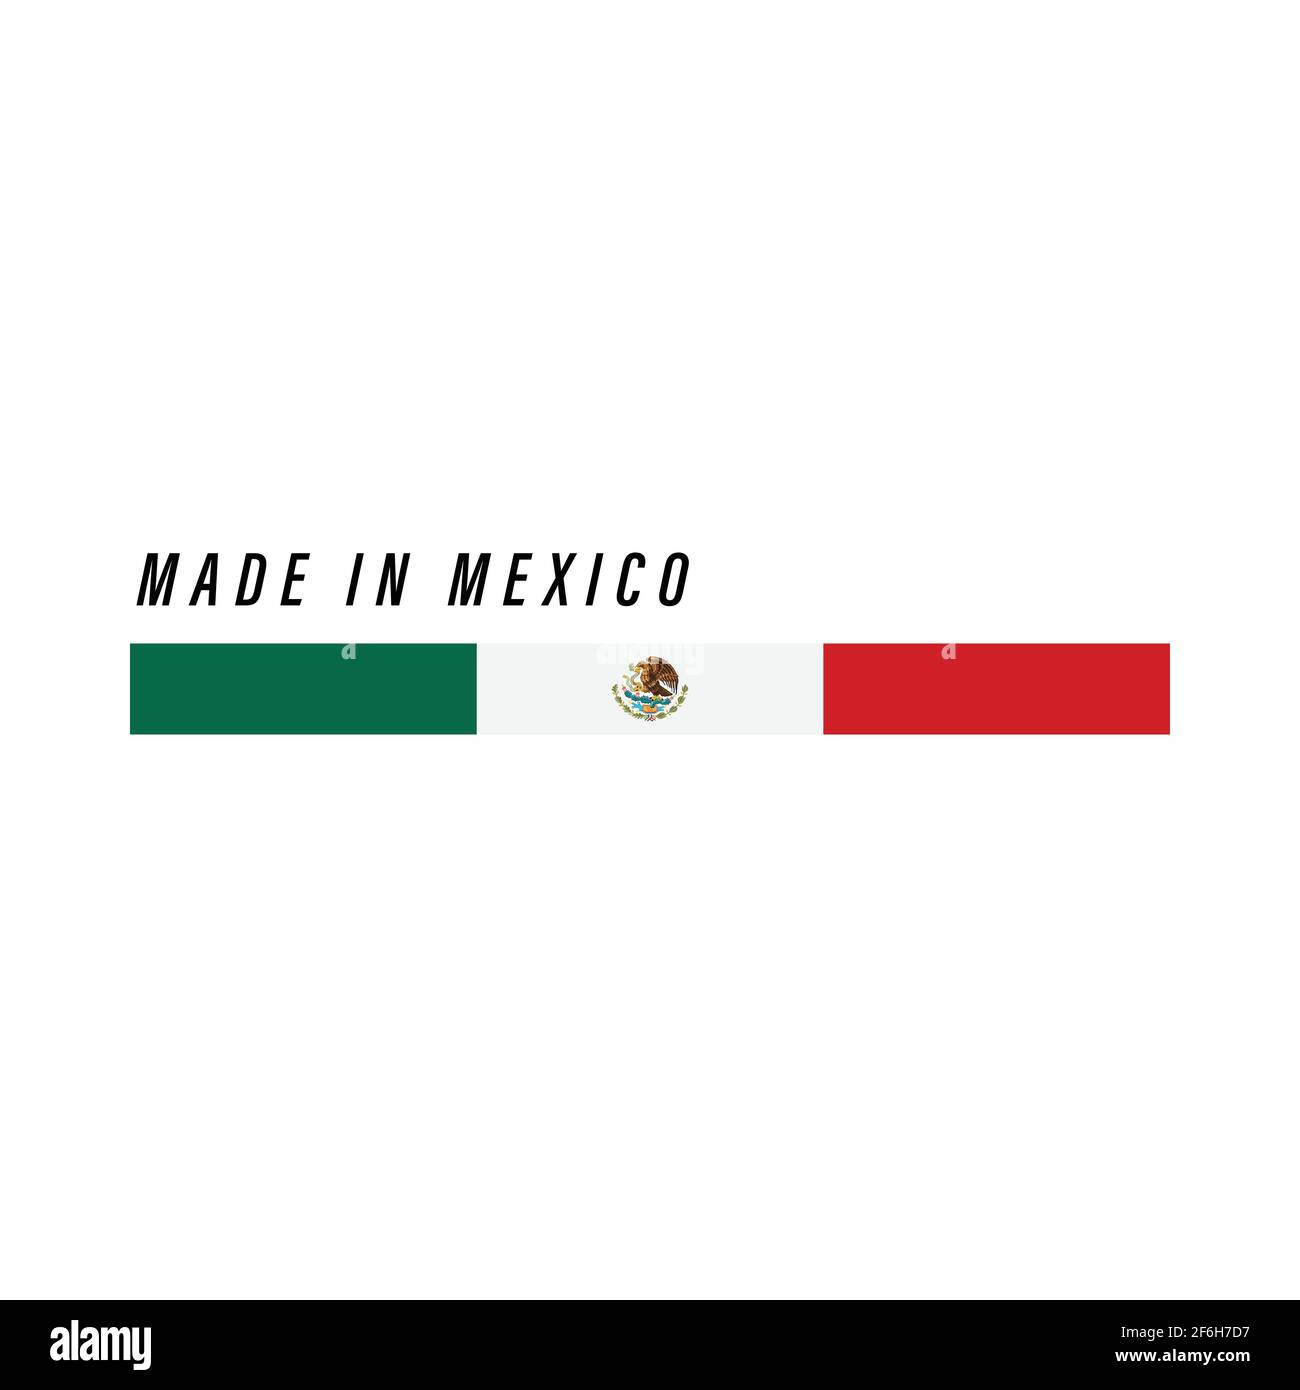 Fabbricato in Messico, badge o etichetta con bandiera isolata su sfondo bianco Illustrazione Vettoriale